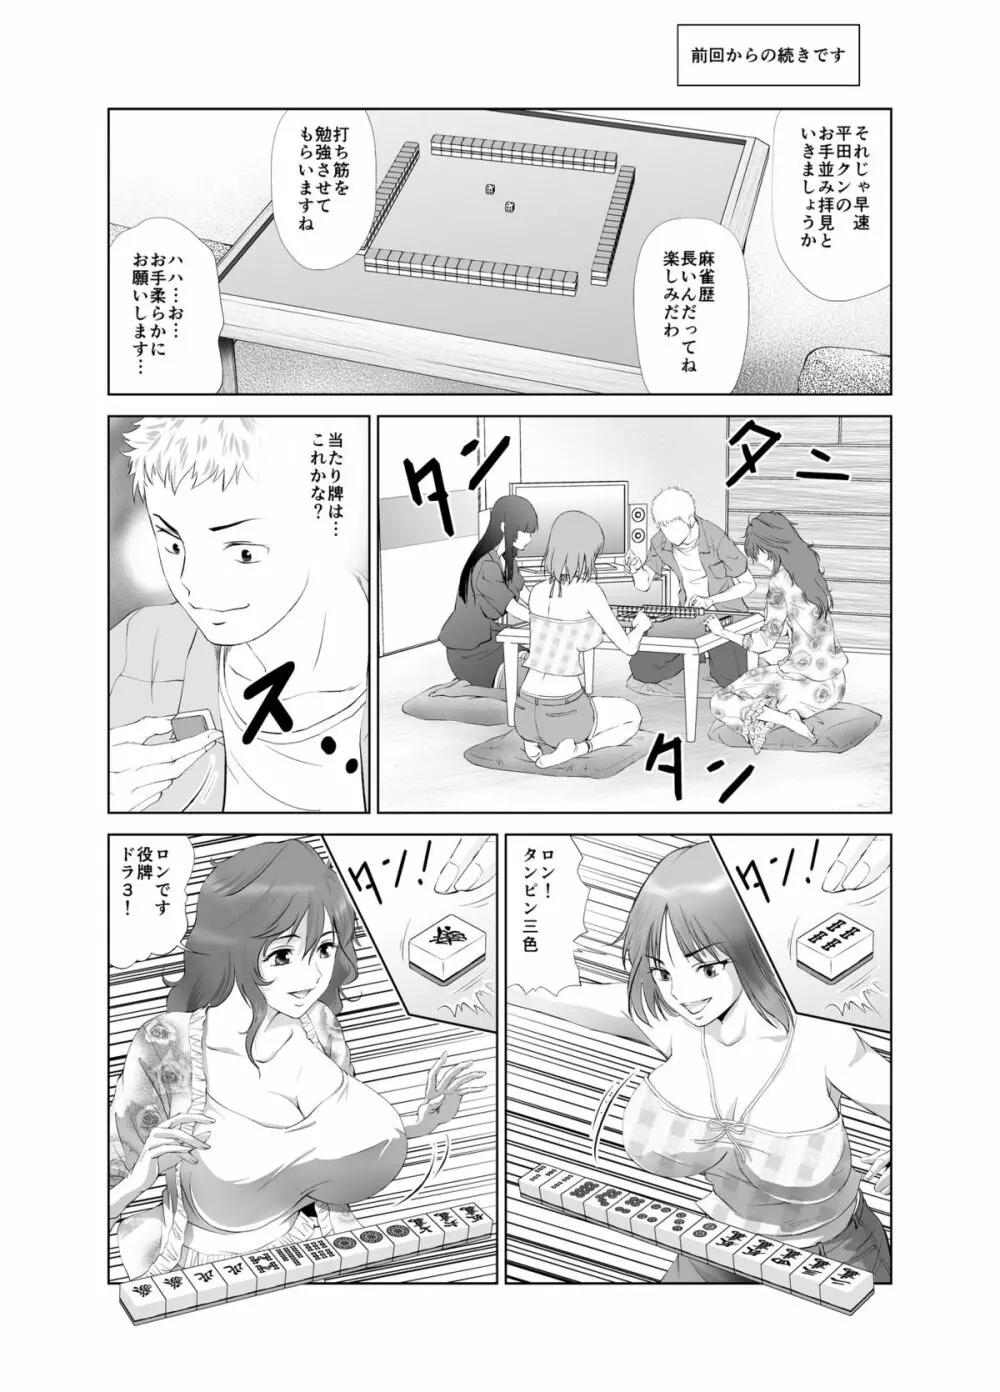 脱衣麻雀～漫画編～【完成版】 7ページ